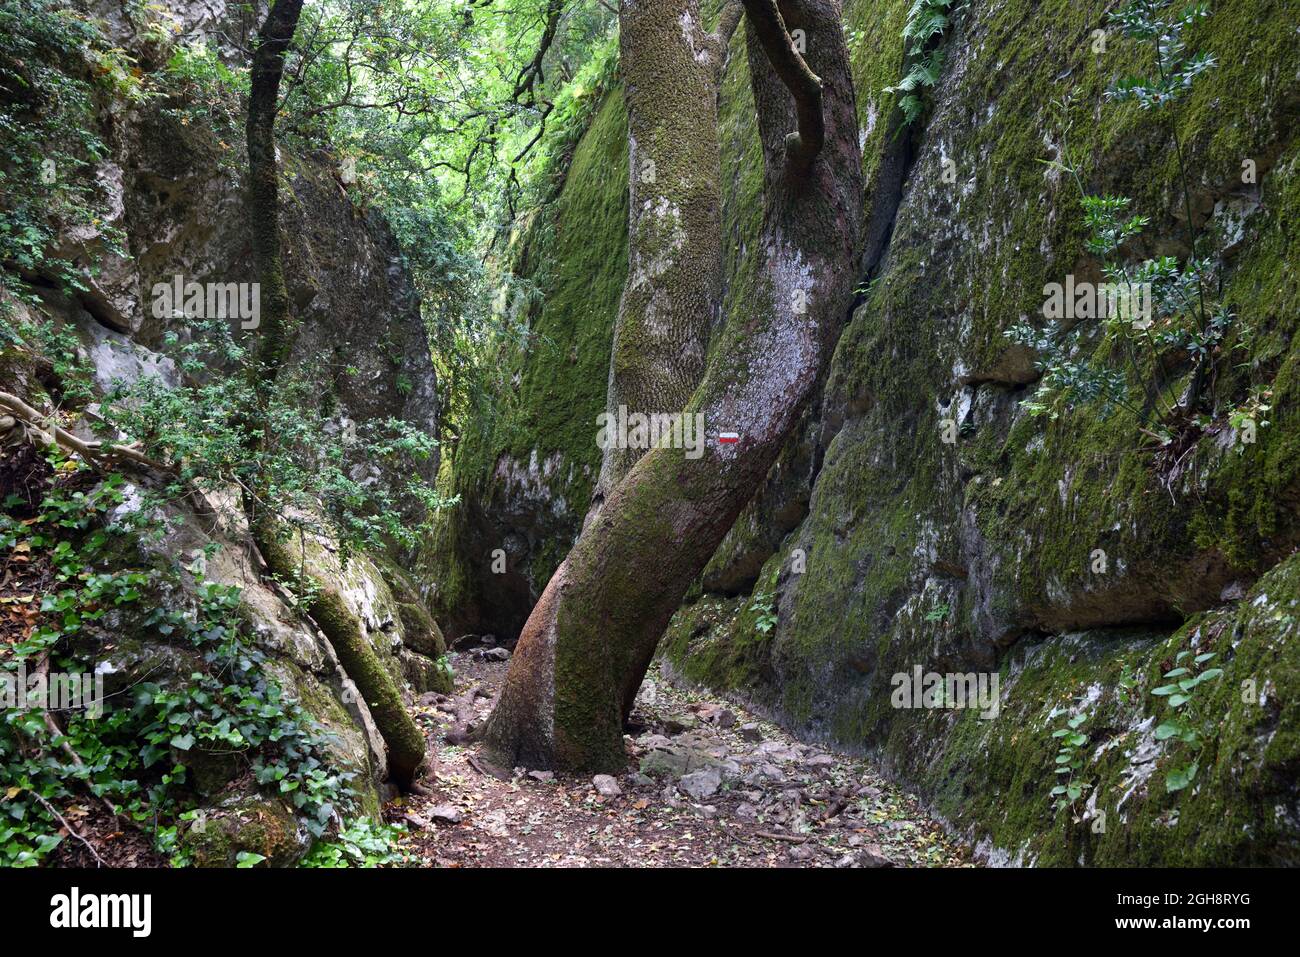 Forêt dingy, étroit Canyon et sentier dans la gorge de Regalon, ou Gorges du Régalon, près du Parc régional du Merindol Luberon Provence France Banque D'Images